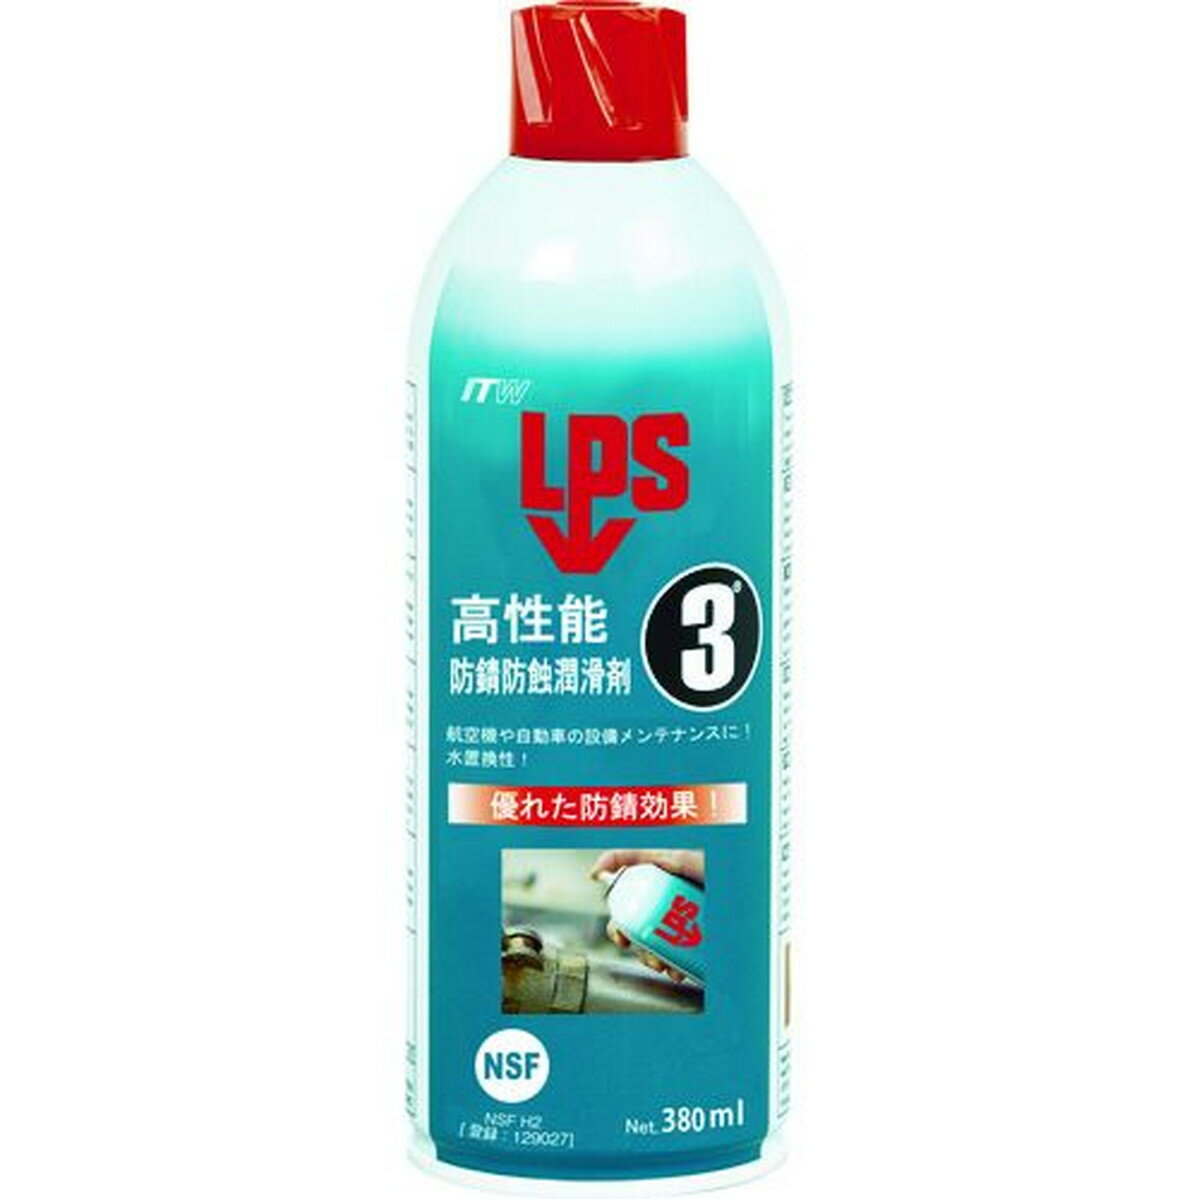 デブコン LPS3 高性能防錆防蝕潤滑剤 380ml 1本 (L00316)